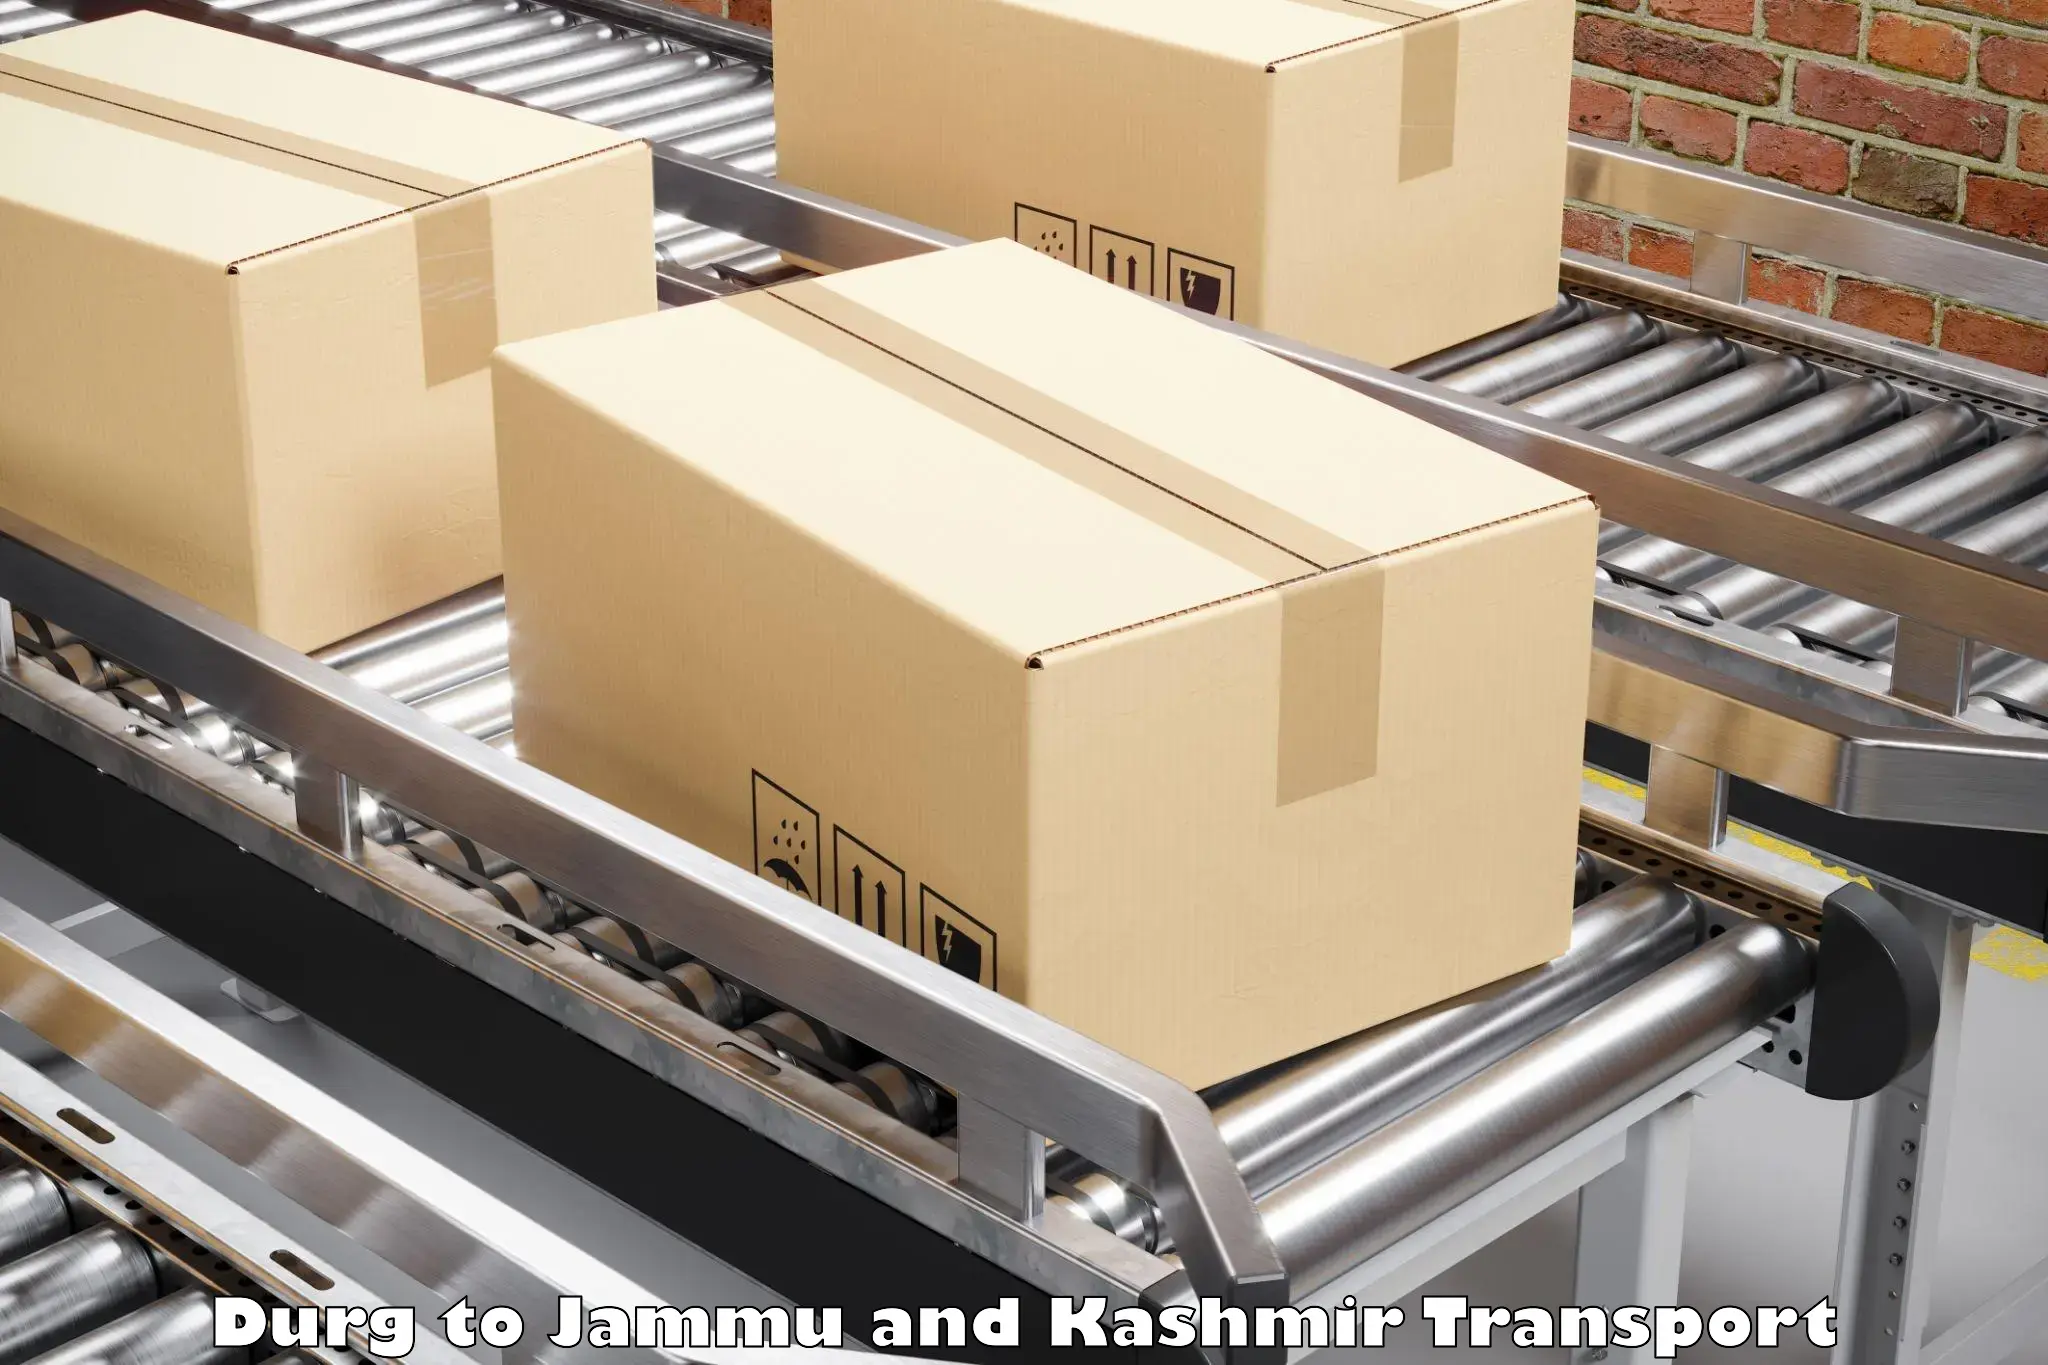 Furniture transport service Durg to Hiranagar